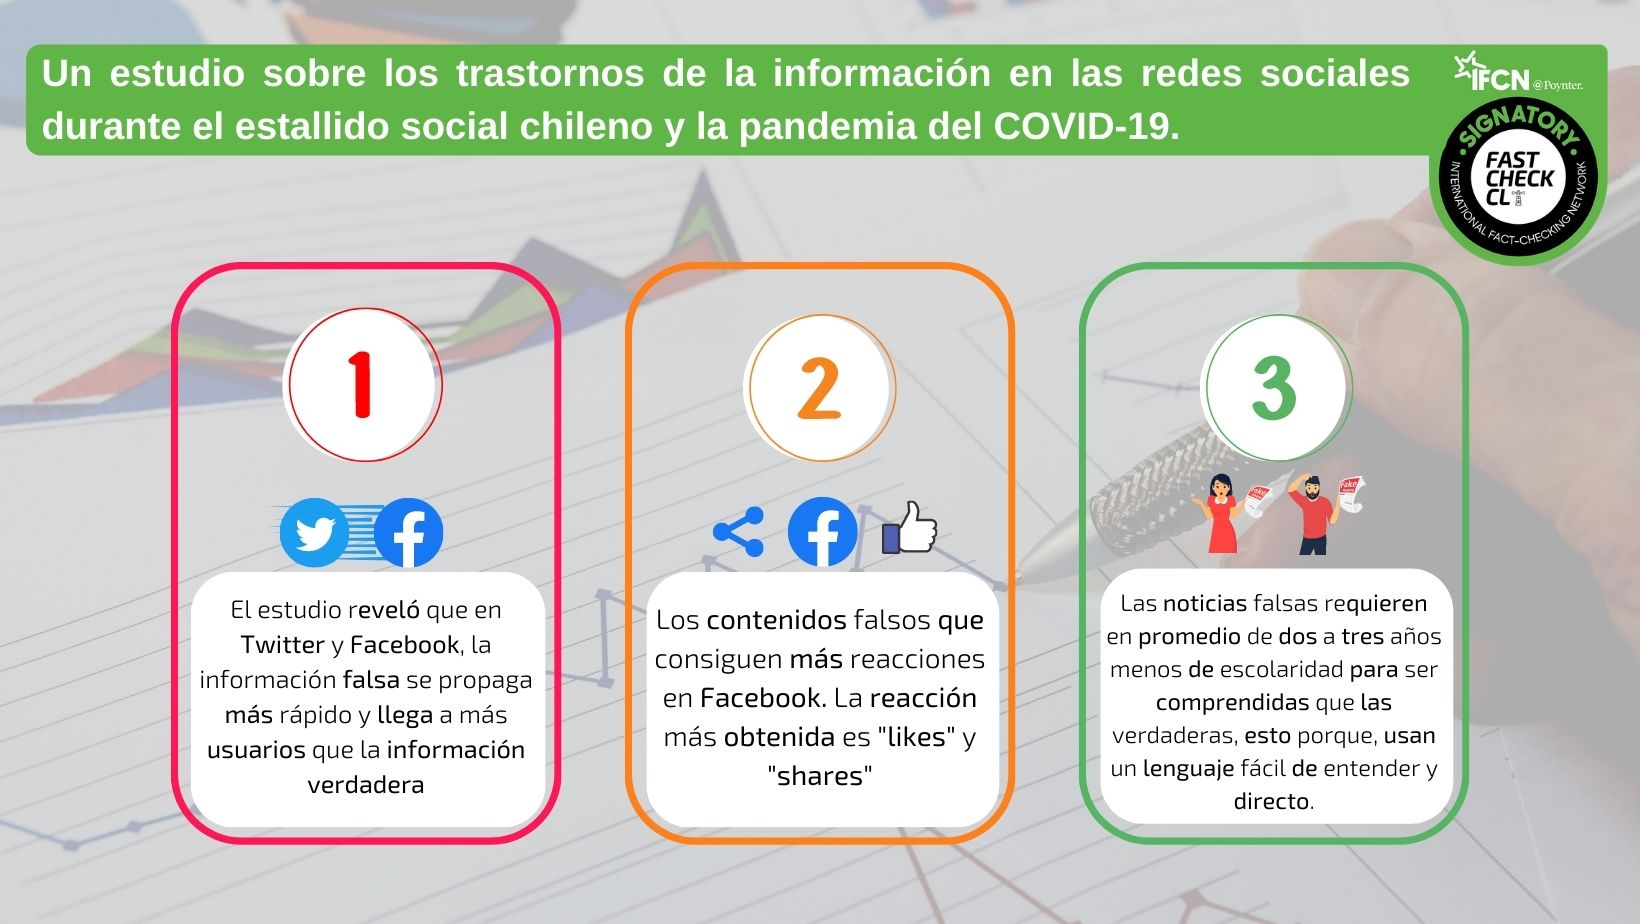 You are currently viewing Desinformaci贸n en las redes sociales durante el estallido social chileno y la pandemia del COVID-19